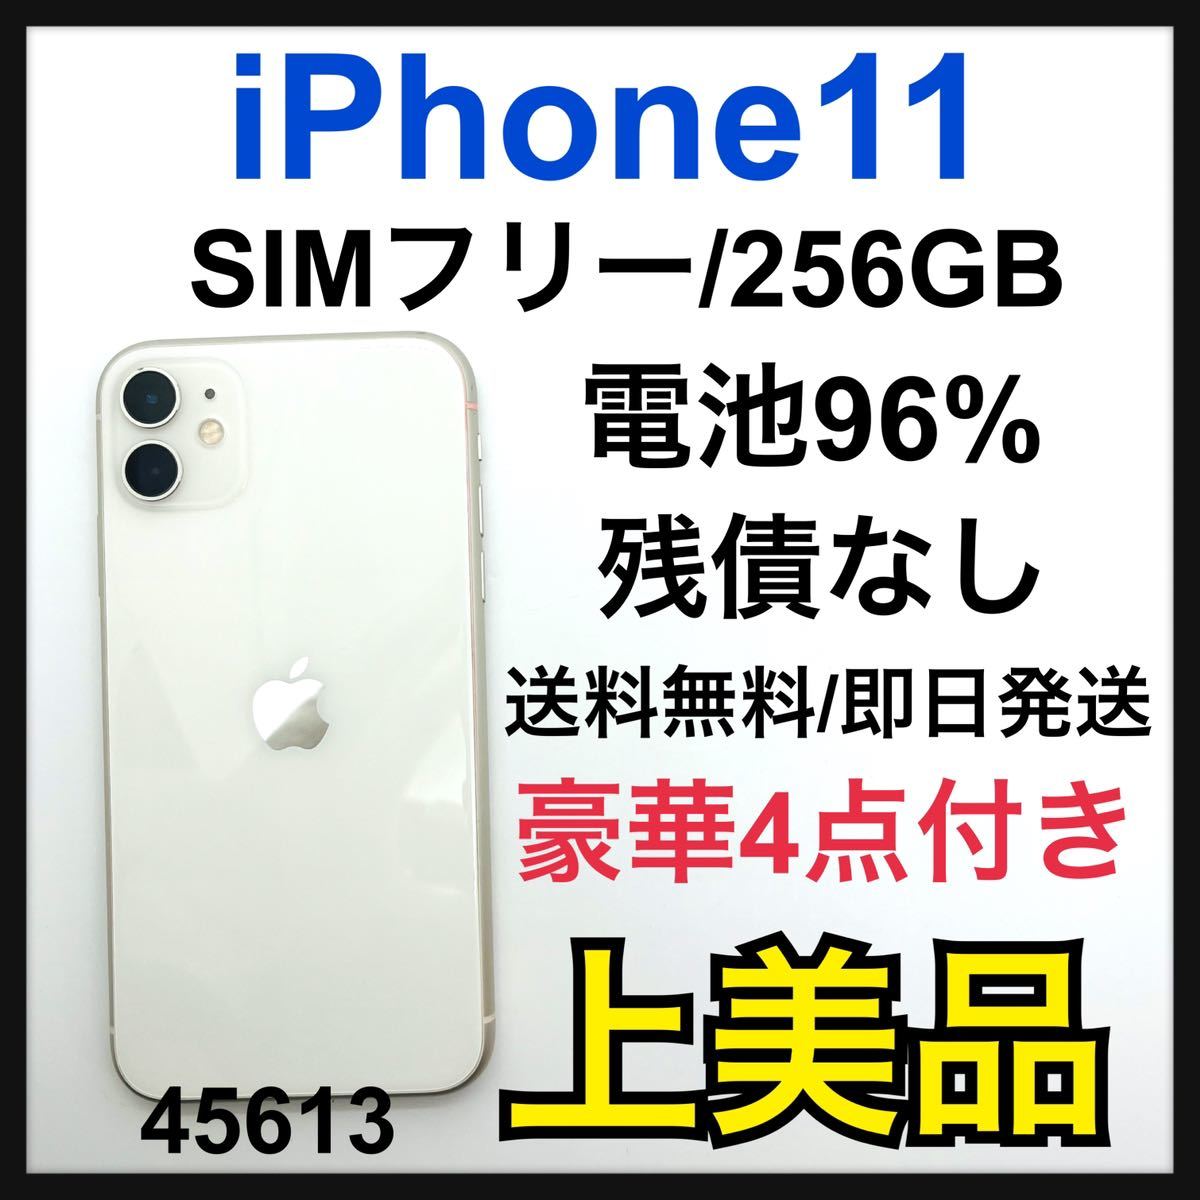 オータムセール A 96% 新品液晶 iPhone11 ホワイト 256GB SIMフリー